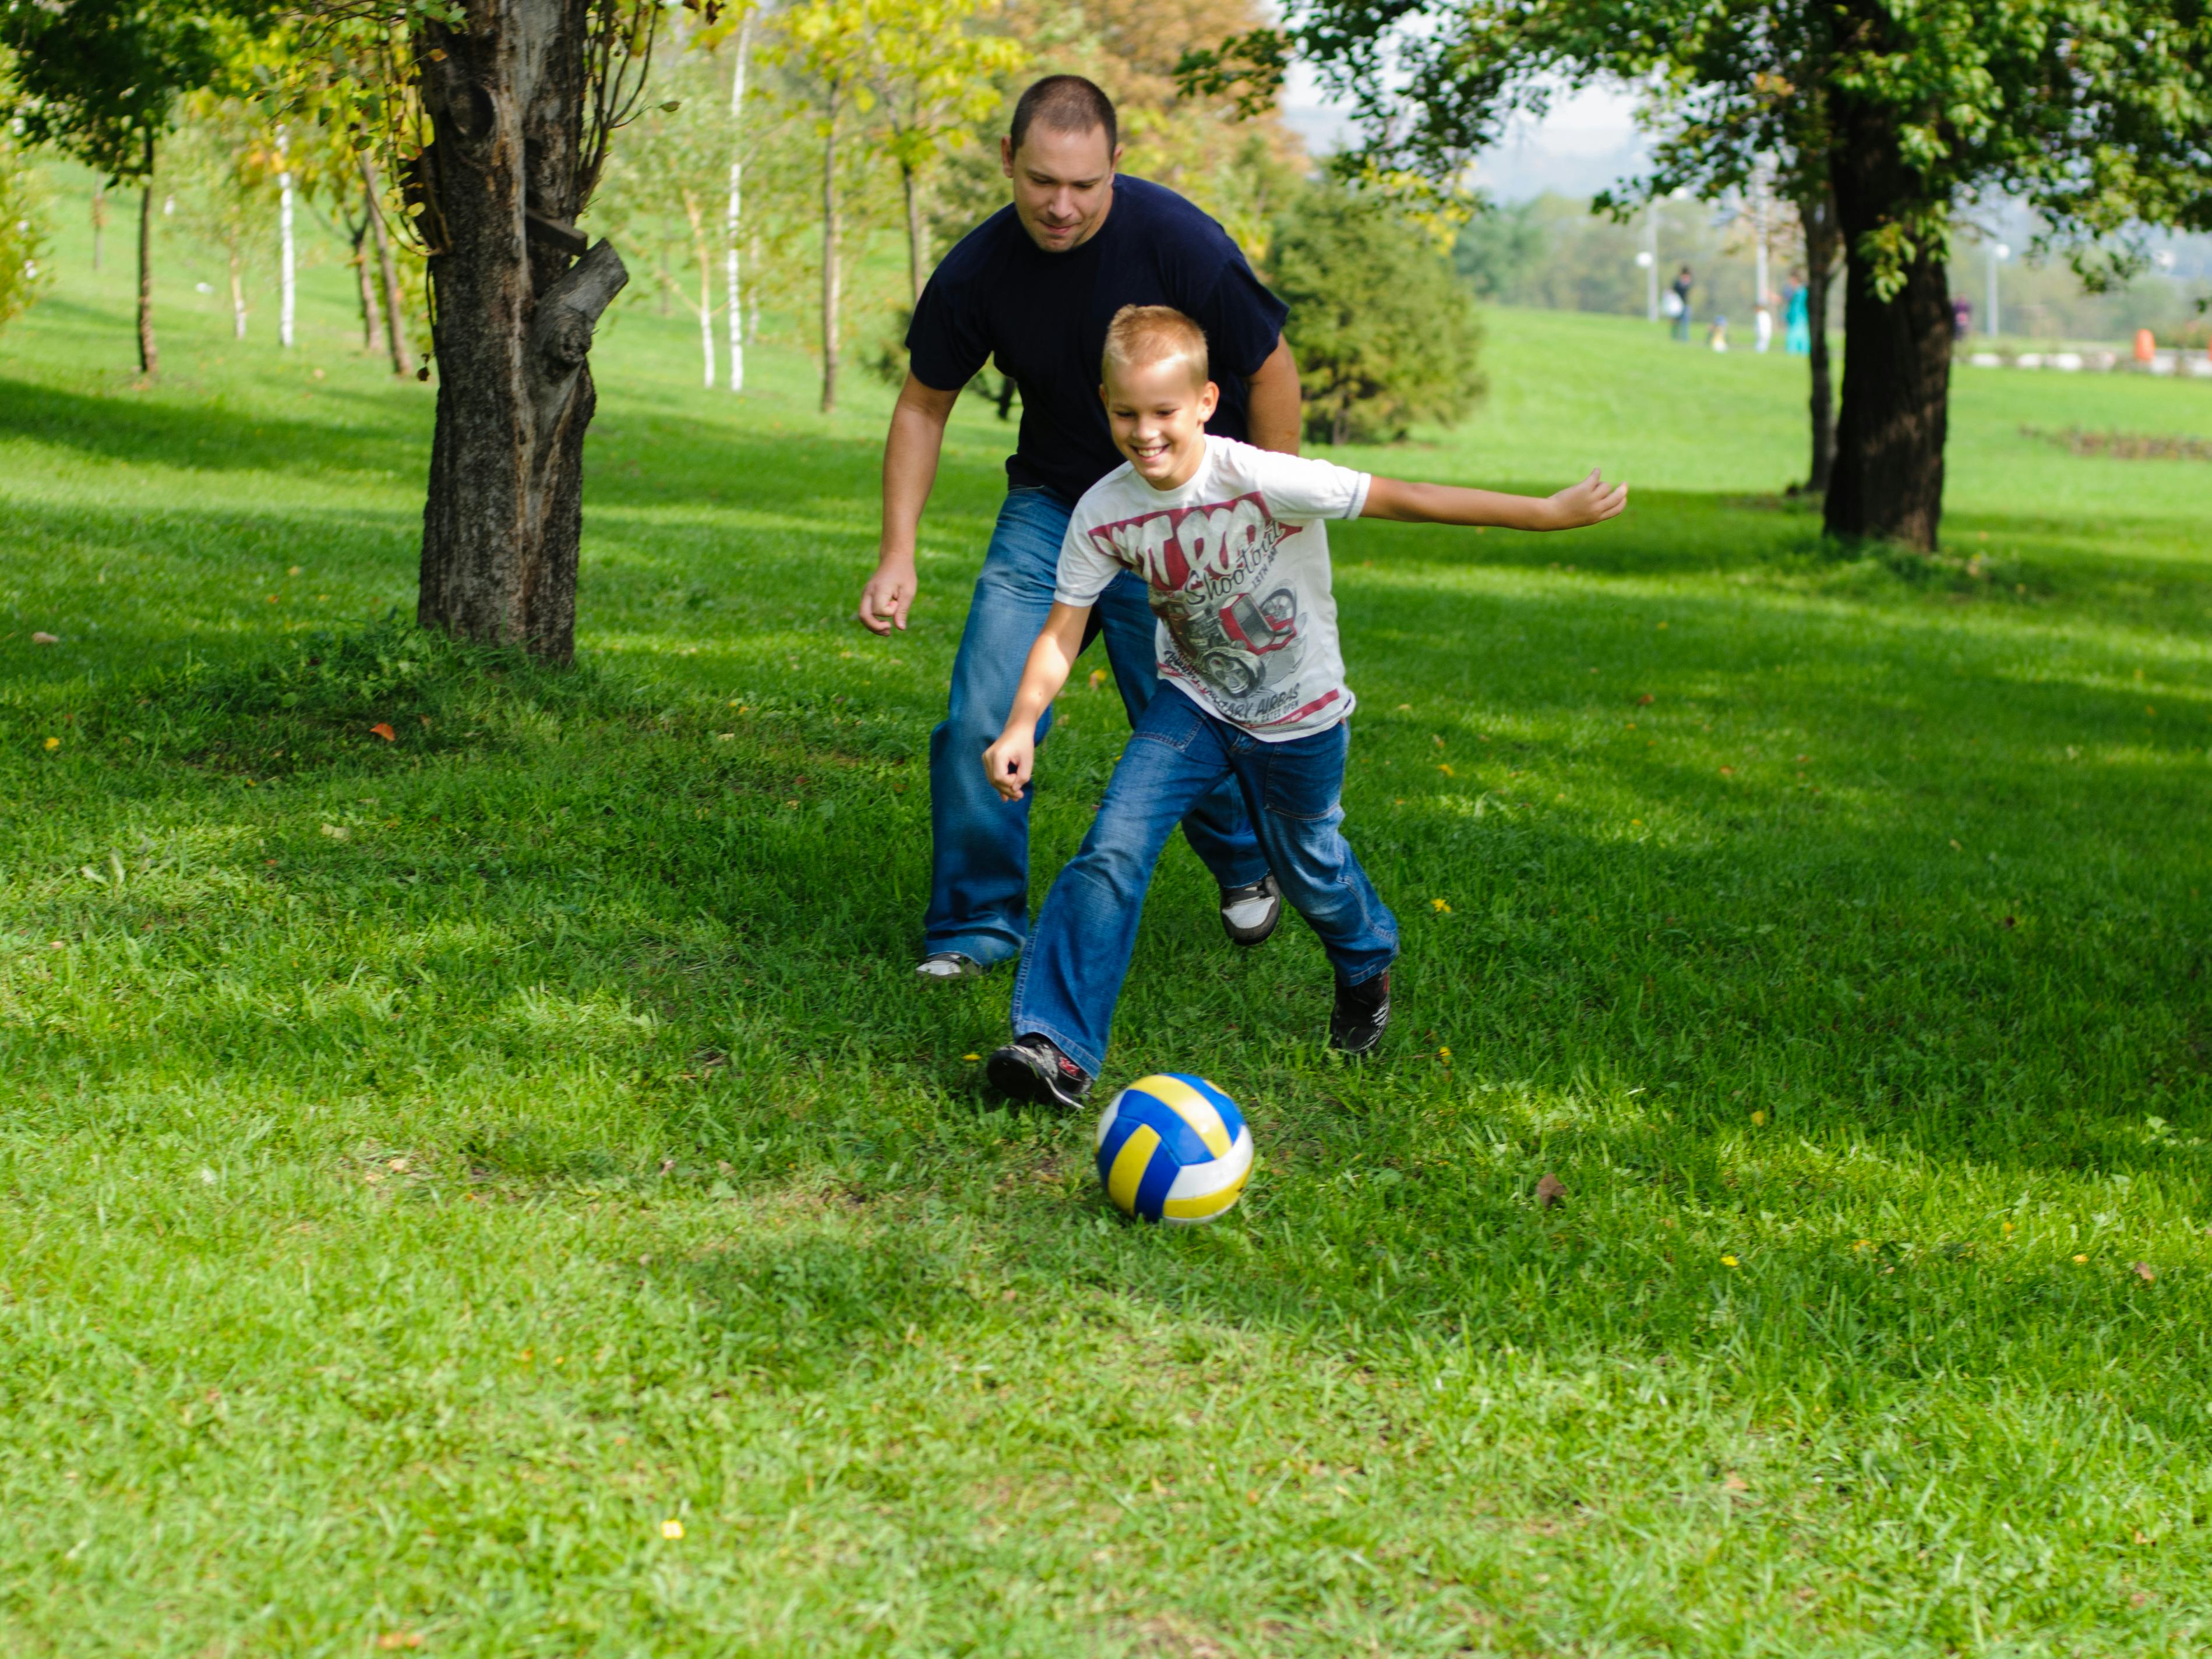 Far og søn spiller fodbold i haven.